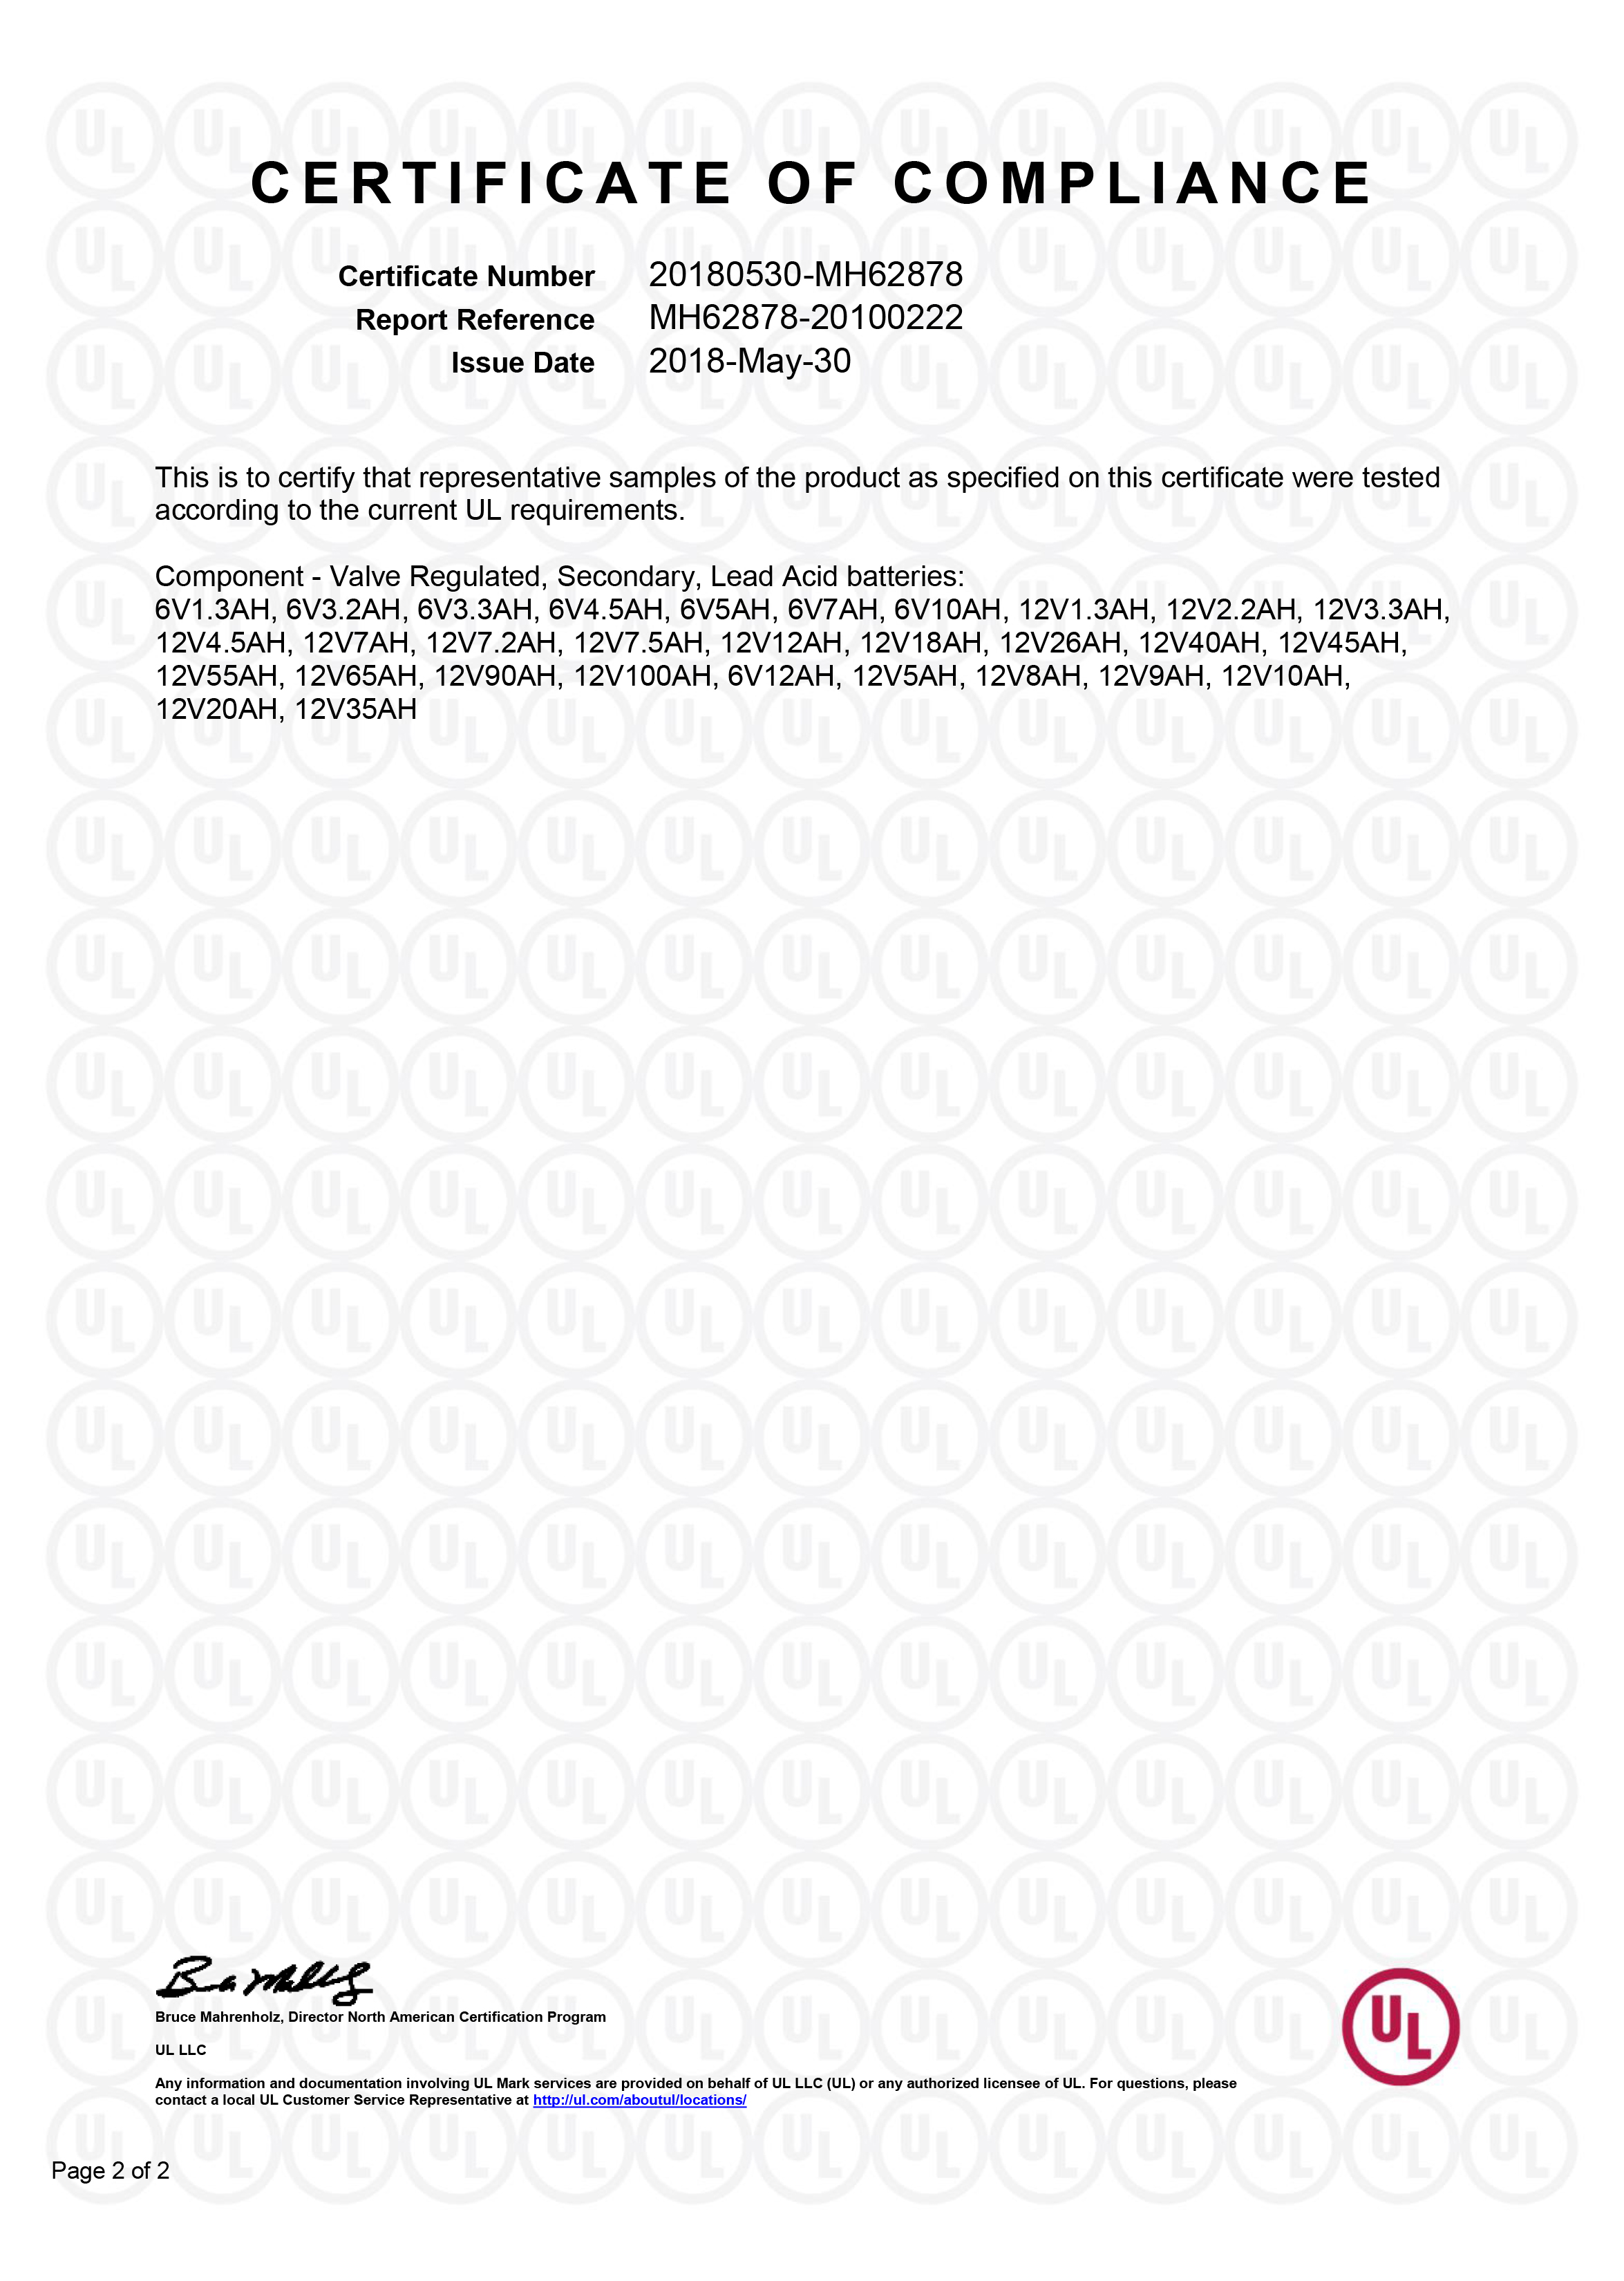 UL Certificate-2.jpg